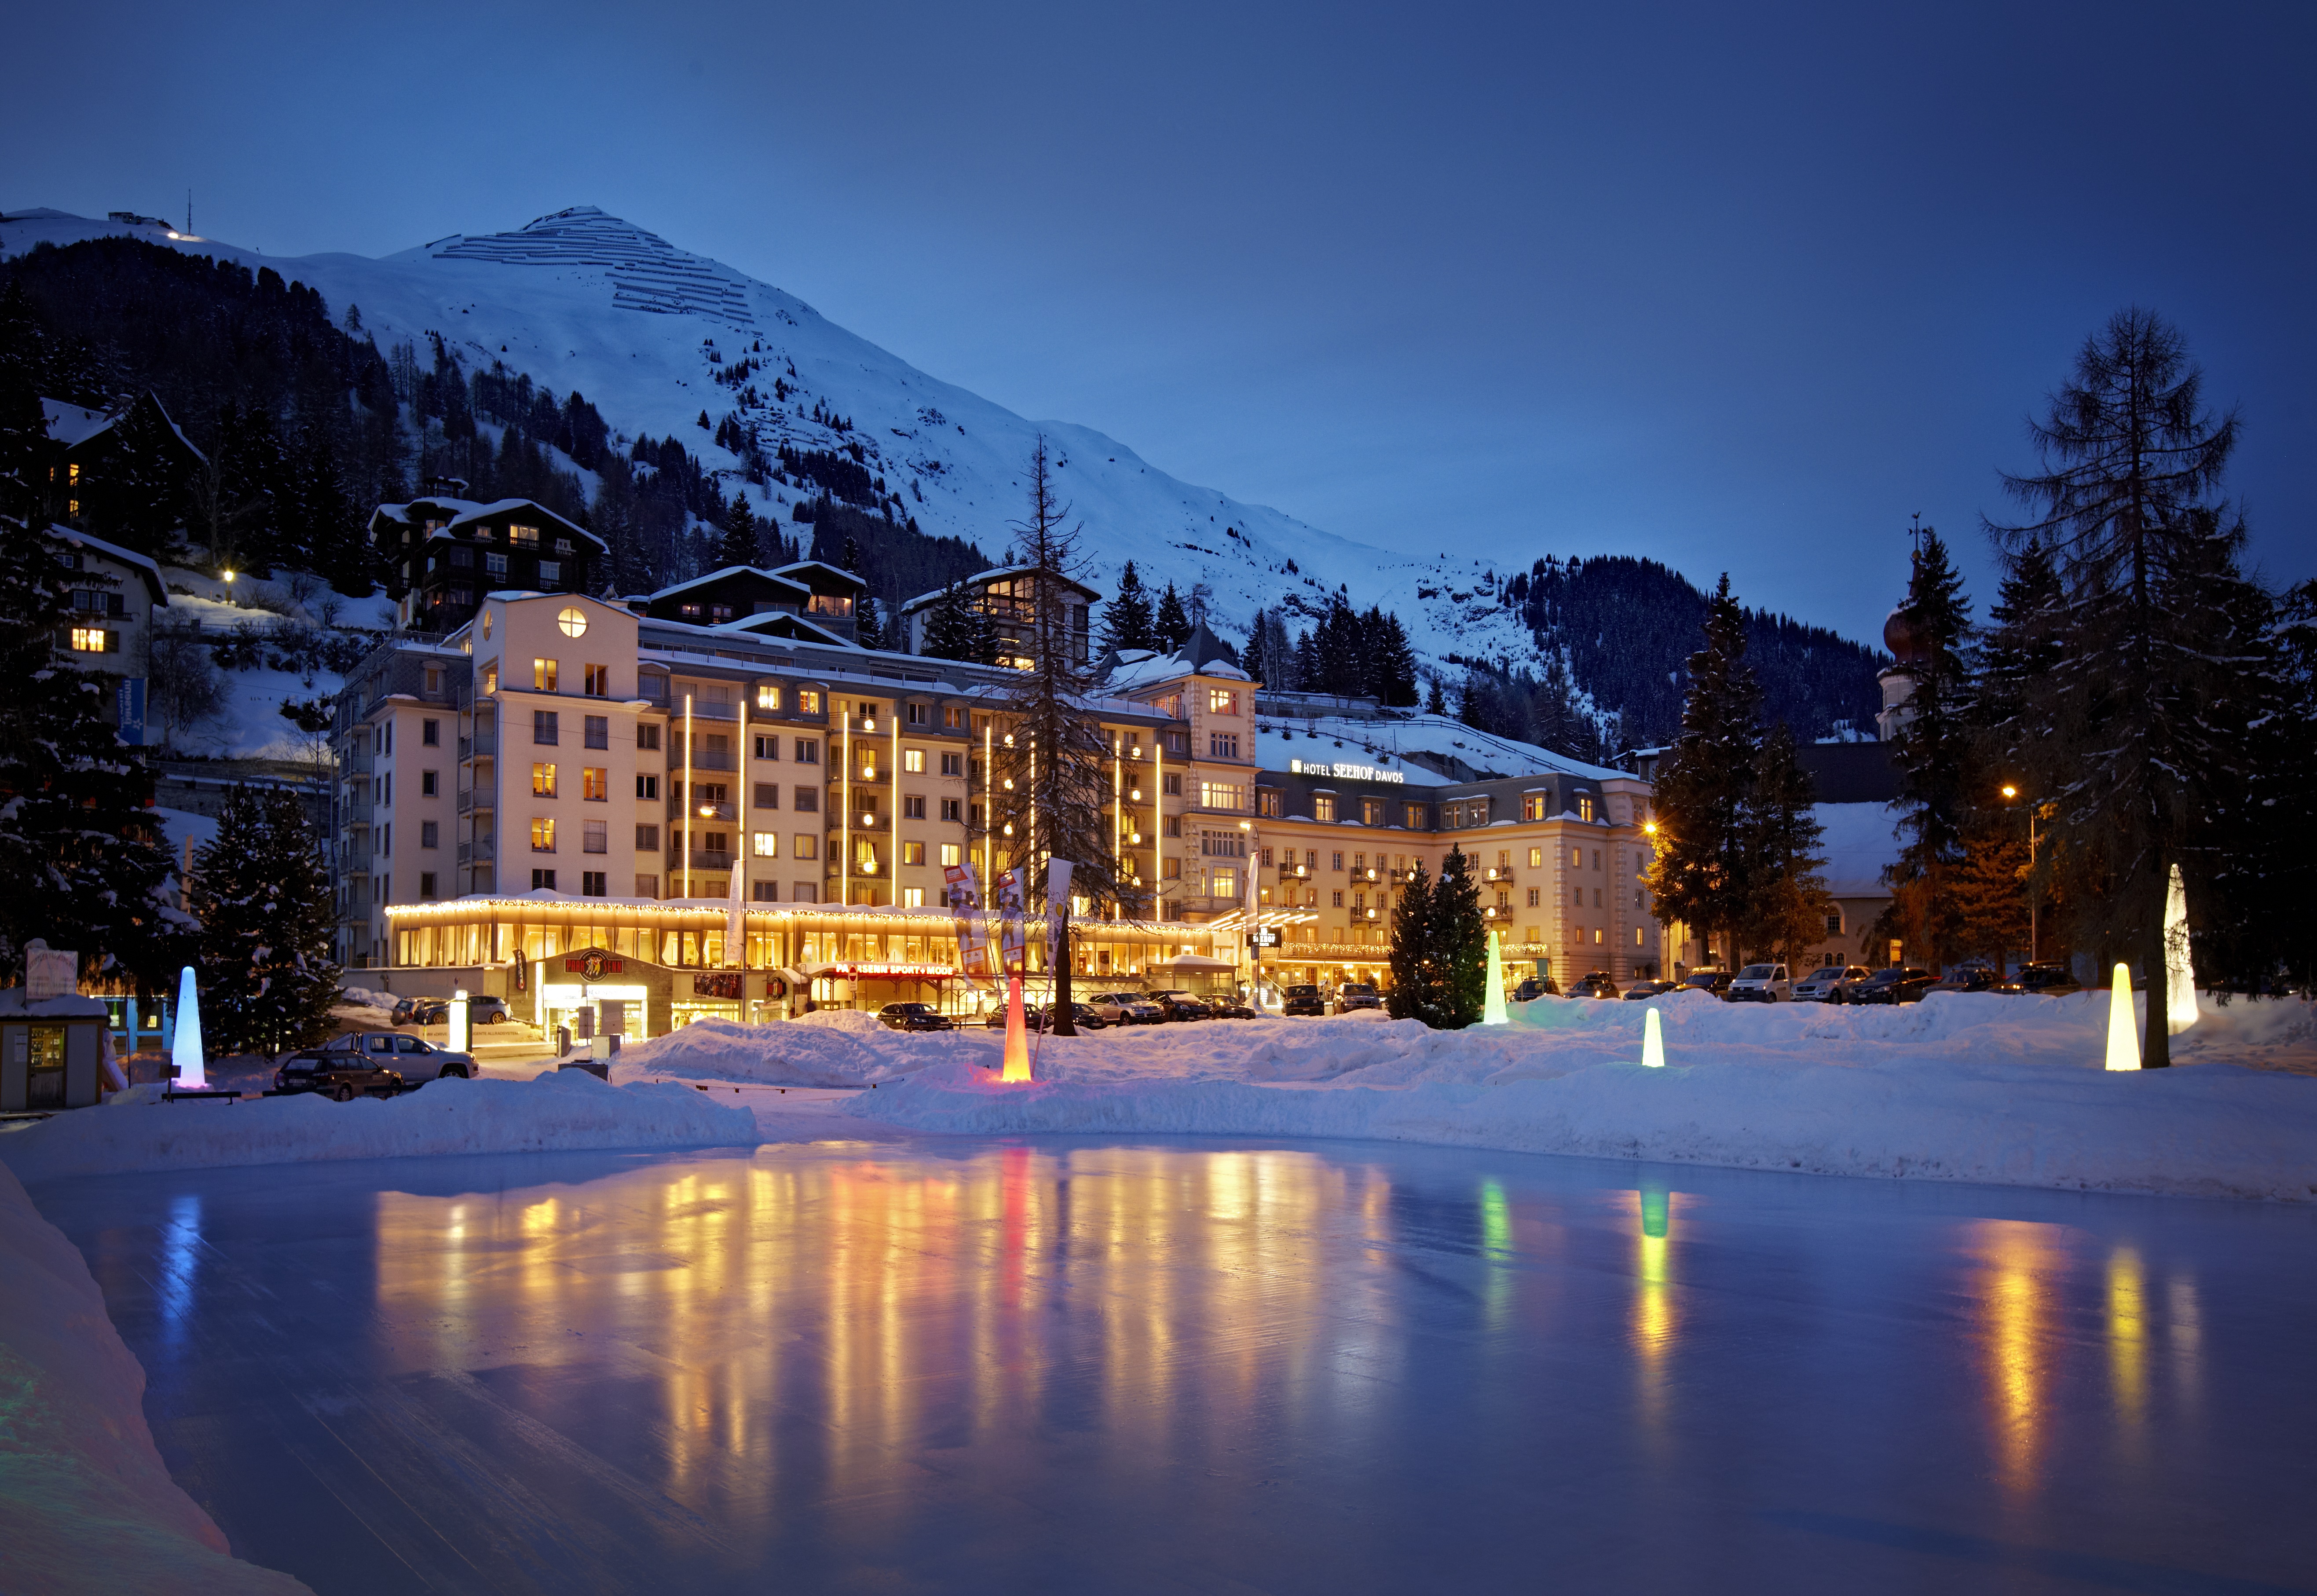 Aussenansicht Hotel Seehof im Winter